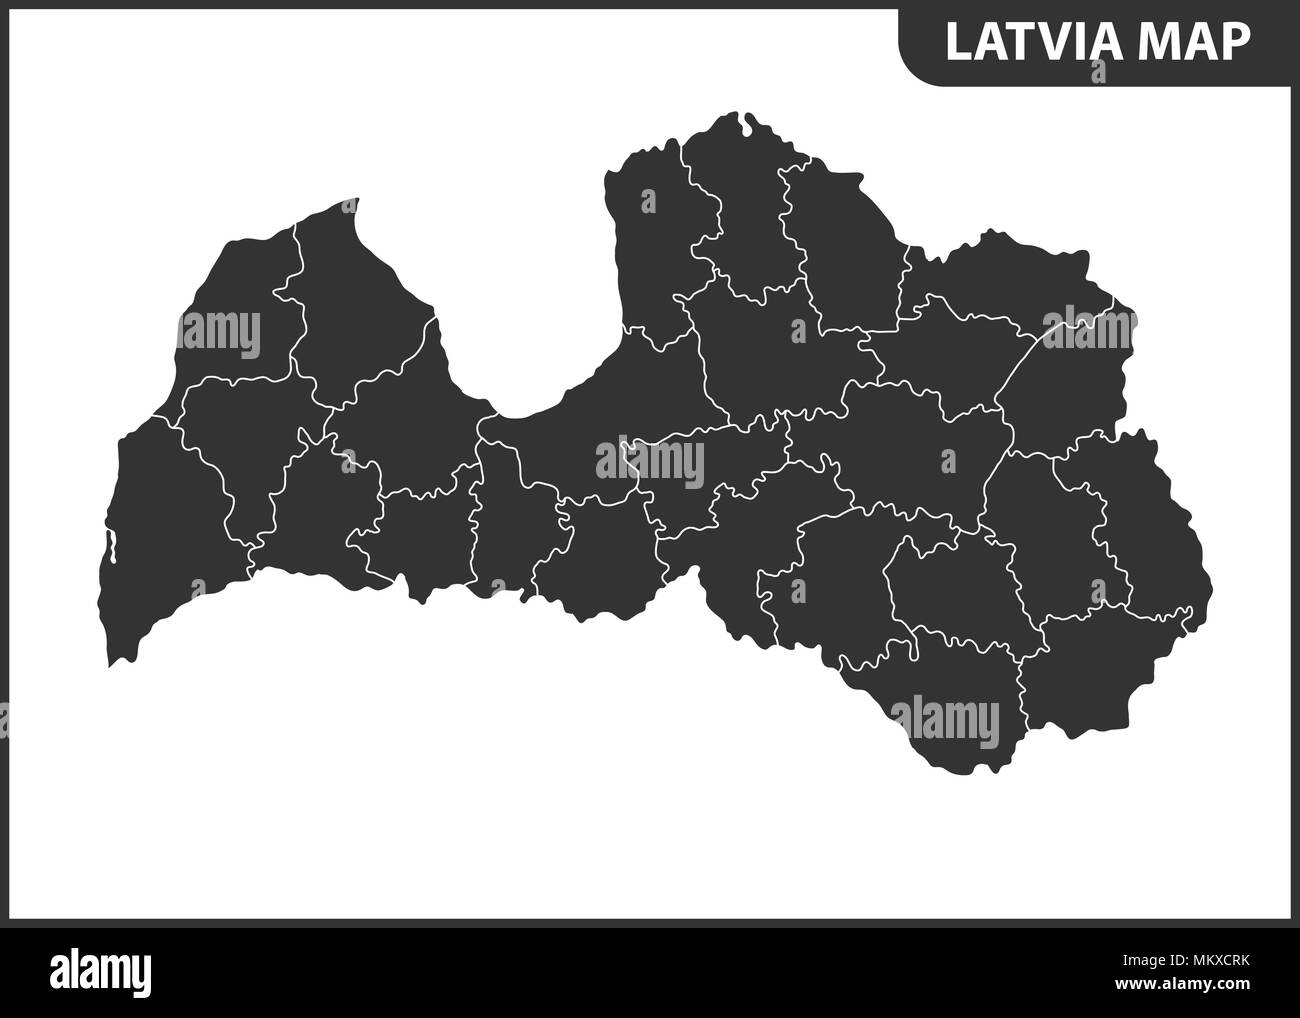 Die detaillierte Karte von Lettland mit Regionen oder Staaten. Verwaltungseinheit Stock Vektor